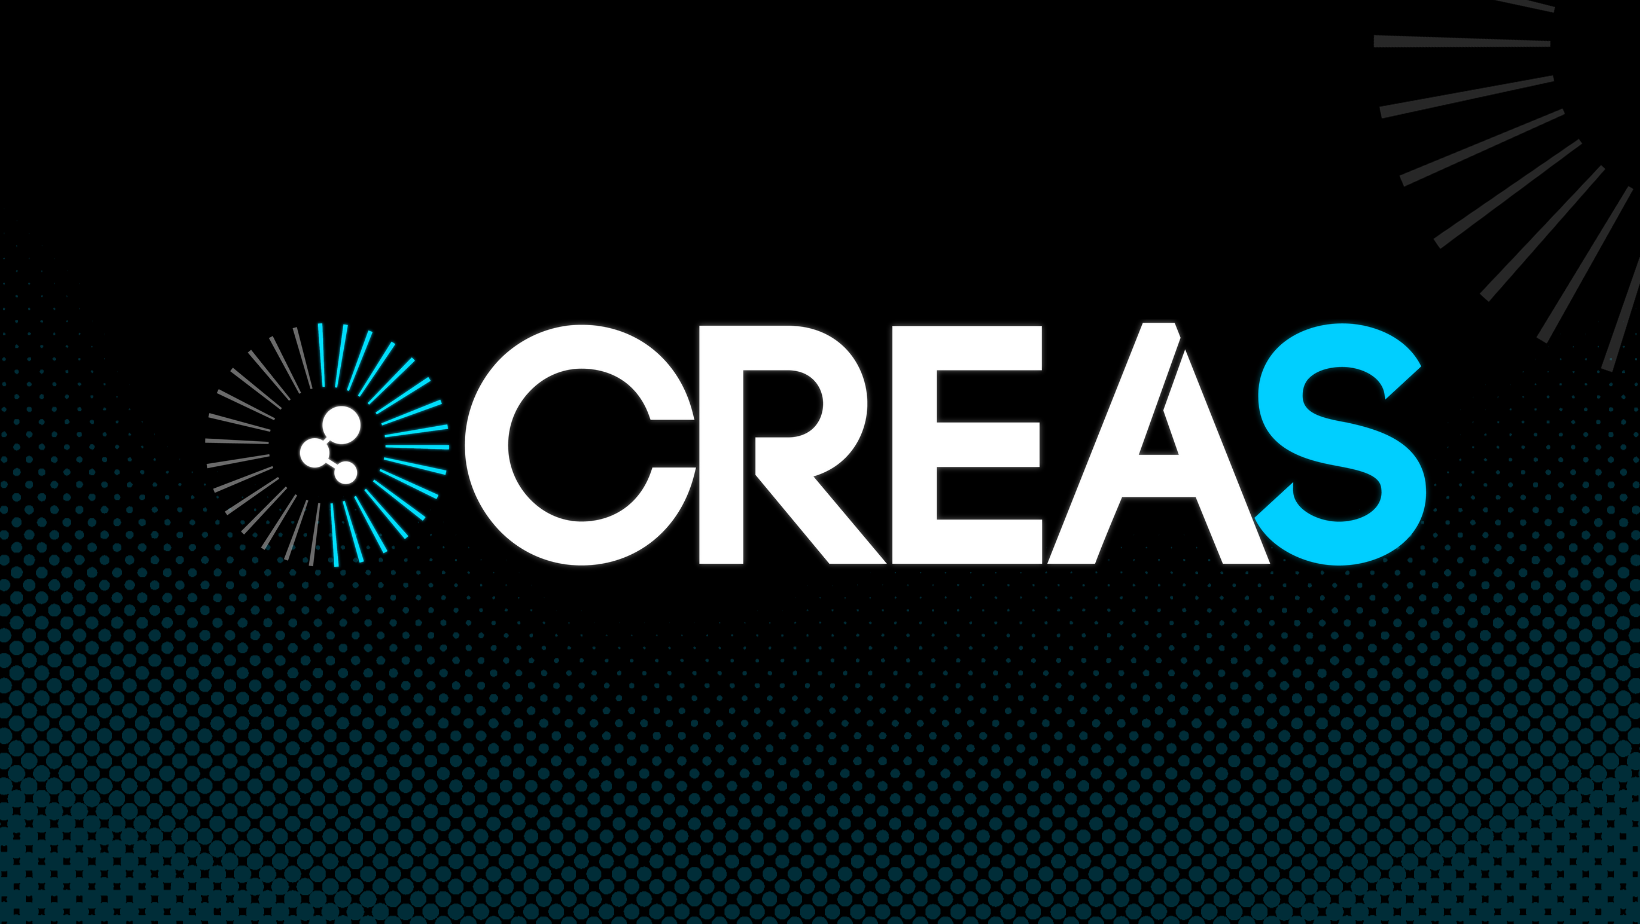 CREAS Company